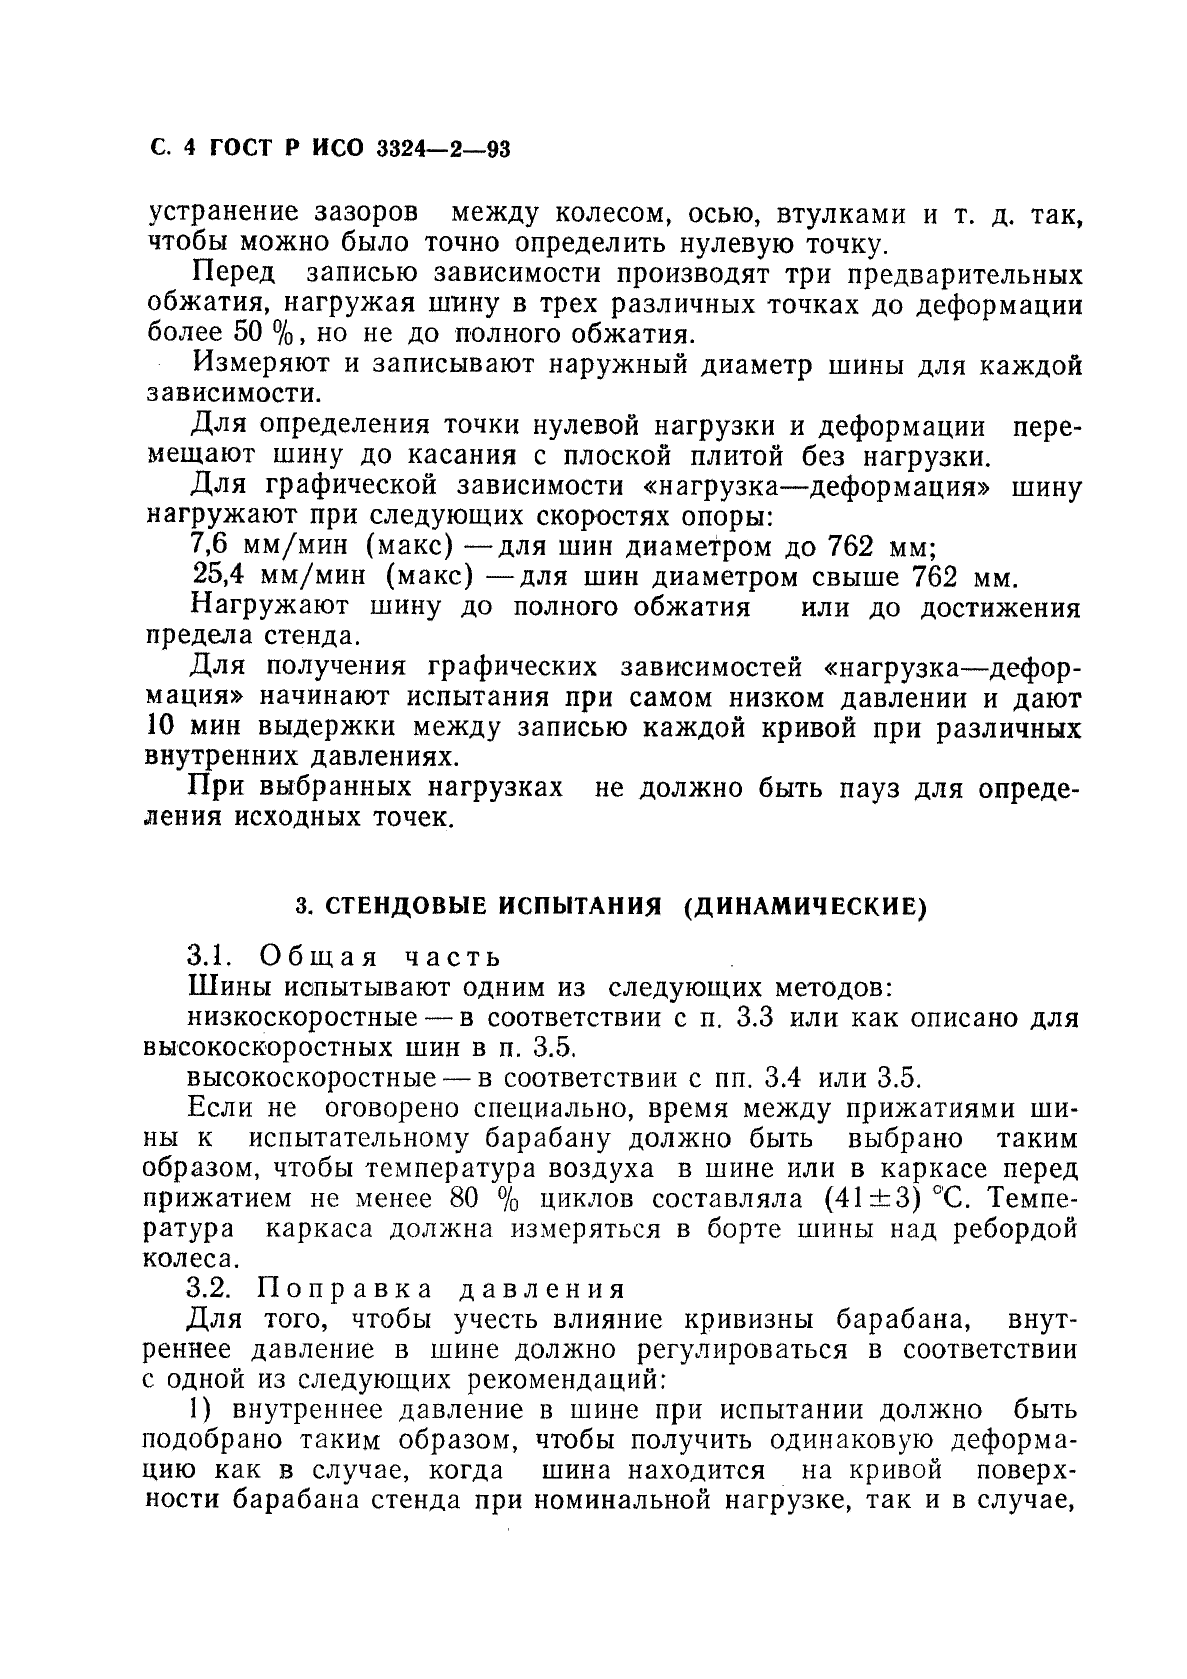 ГОСТ Р ИСО 3324-2-93